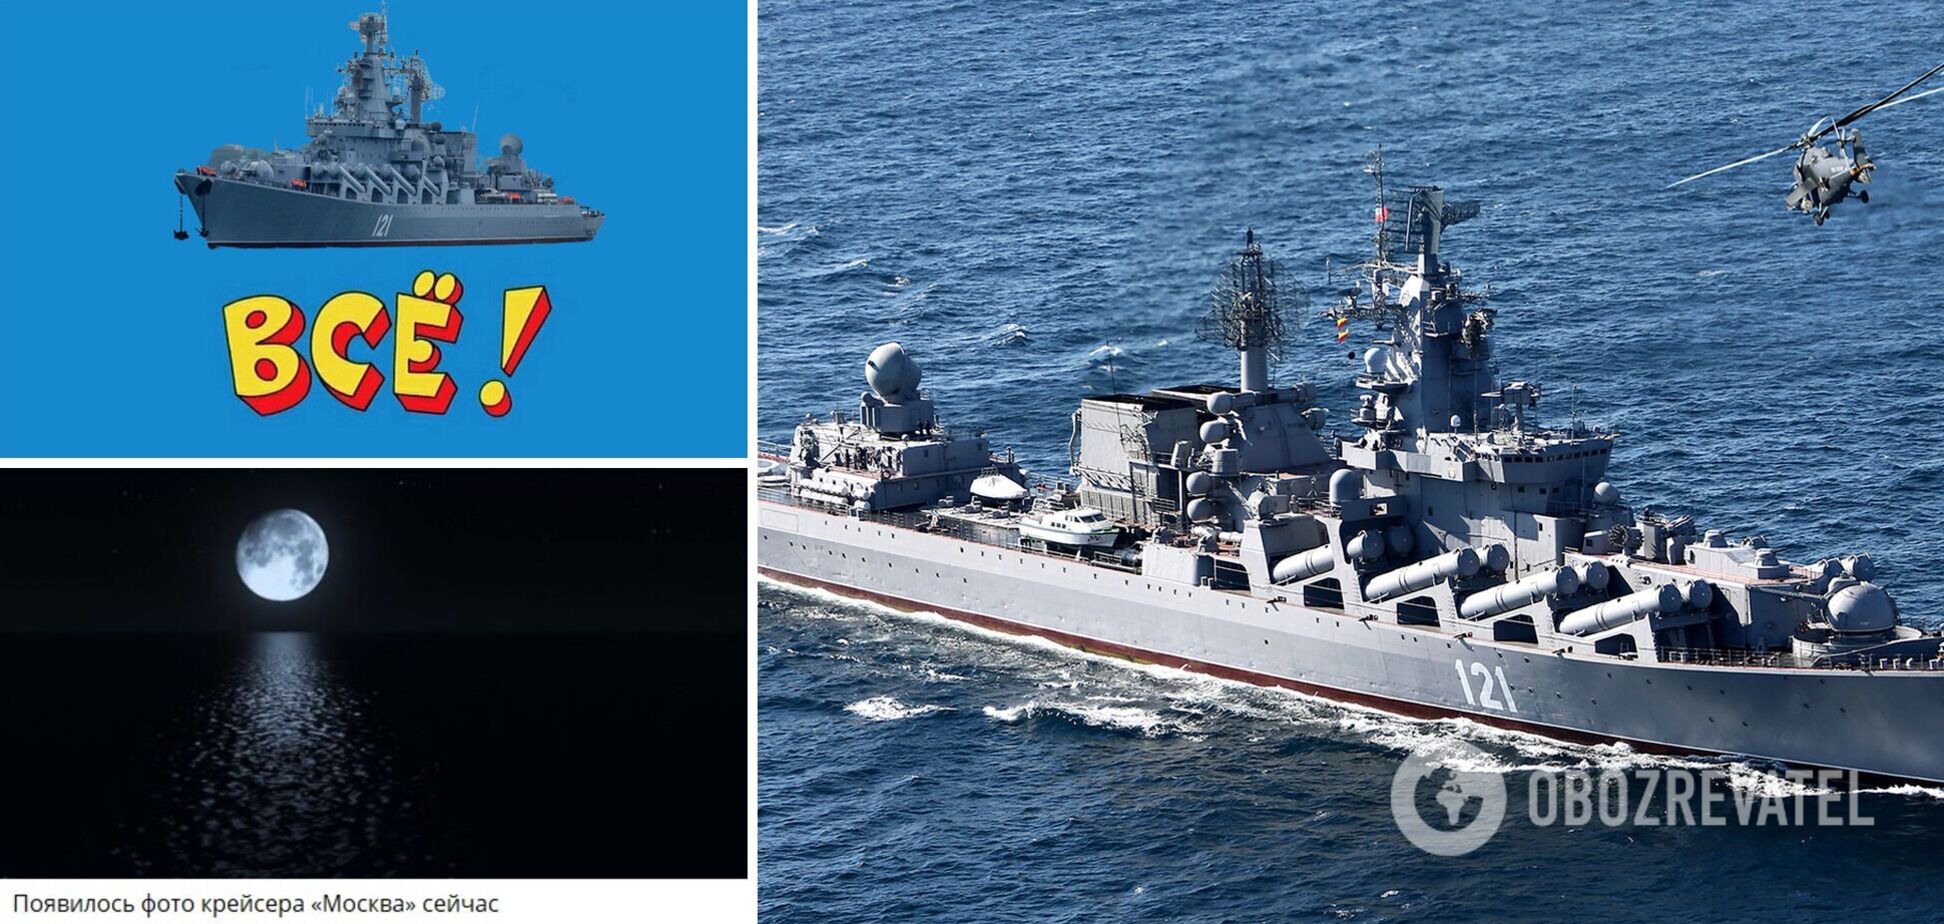 'Крейсер 'Москва' перевели в ранг подводных лодок': в сети – волна насмешек из-за ликвидации флагмана путинского флота. Видео